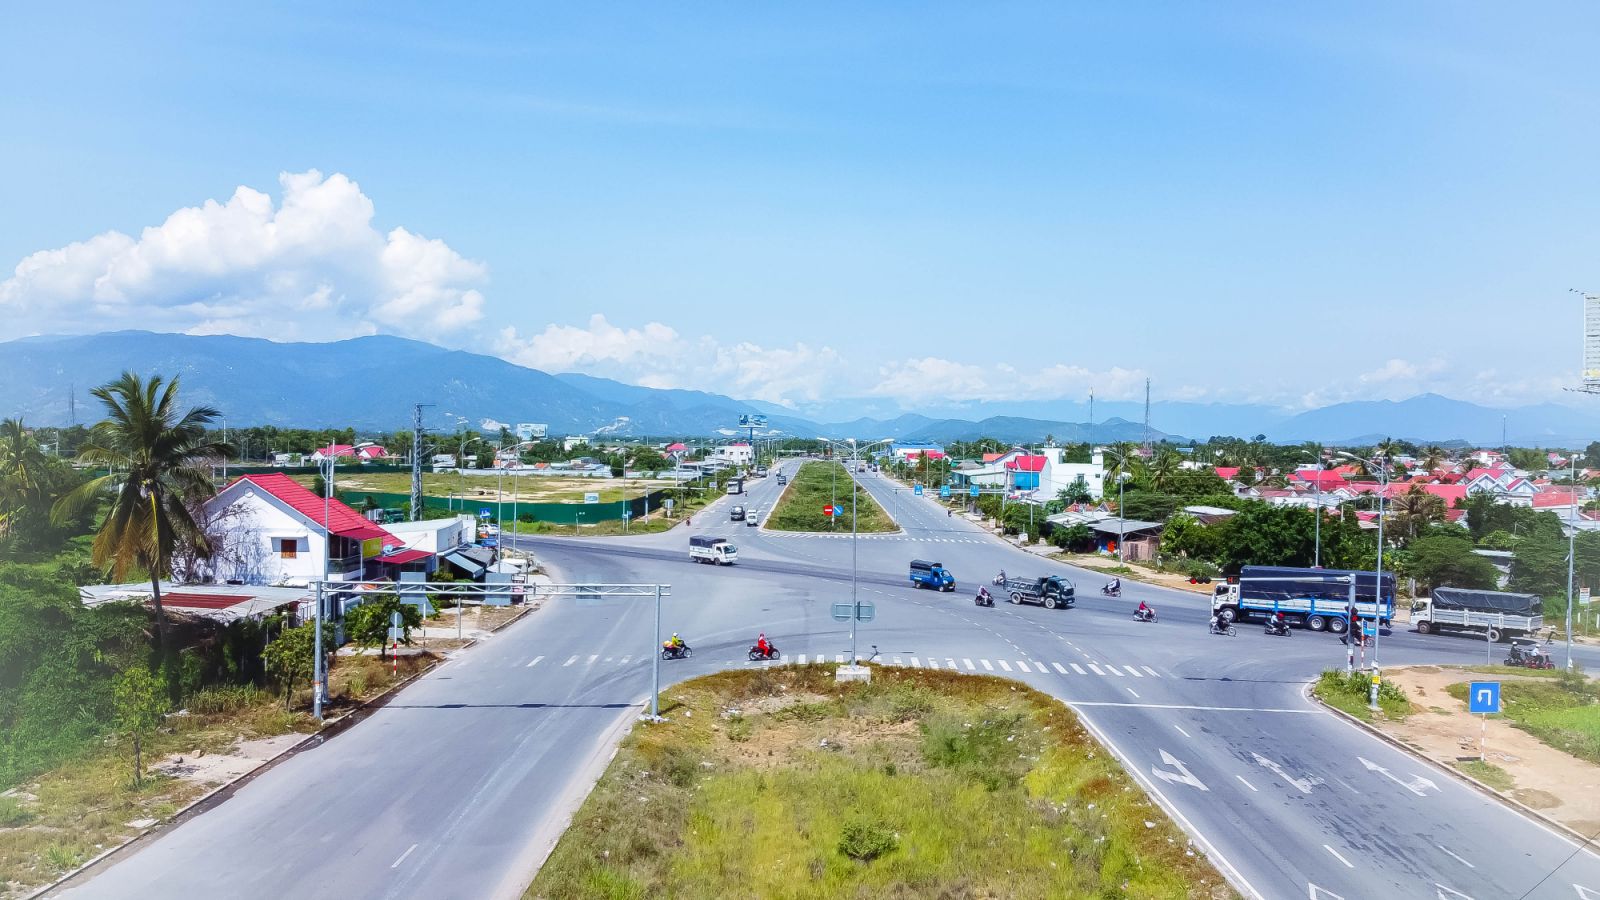 Quy hoạch phân khu phía tây Nha Trang: Lấy ý kiến người dân về việc điều chỉnh